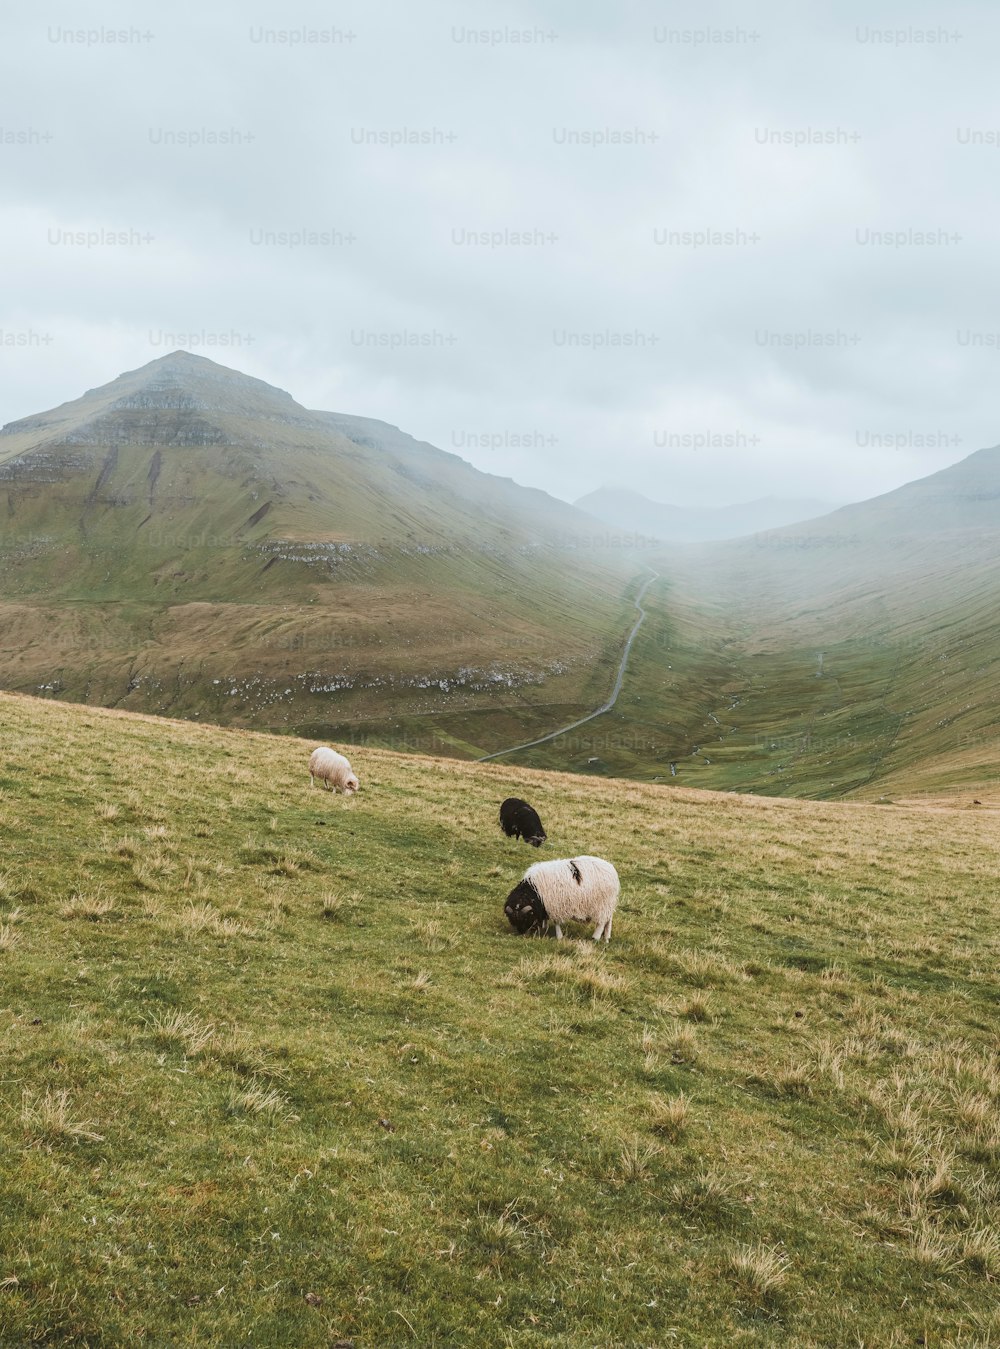 Ein paar Schafe, die auf einem üppig grünen Hügel stehen